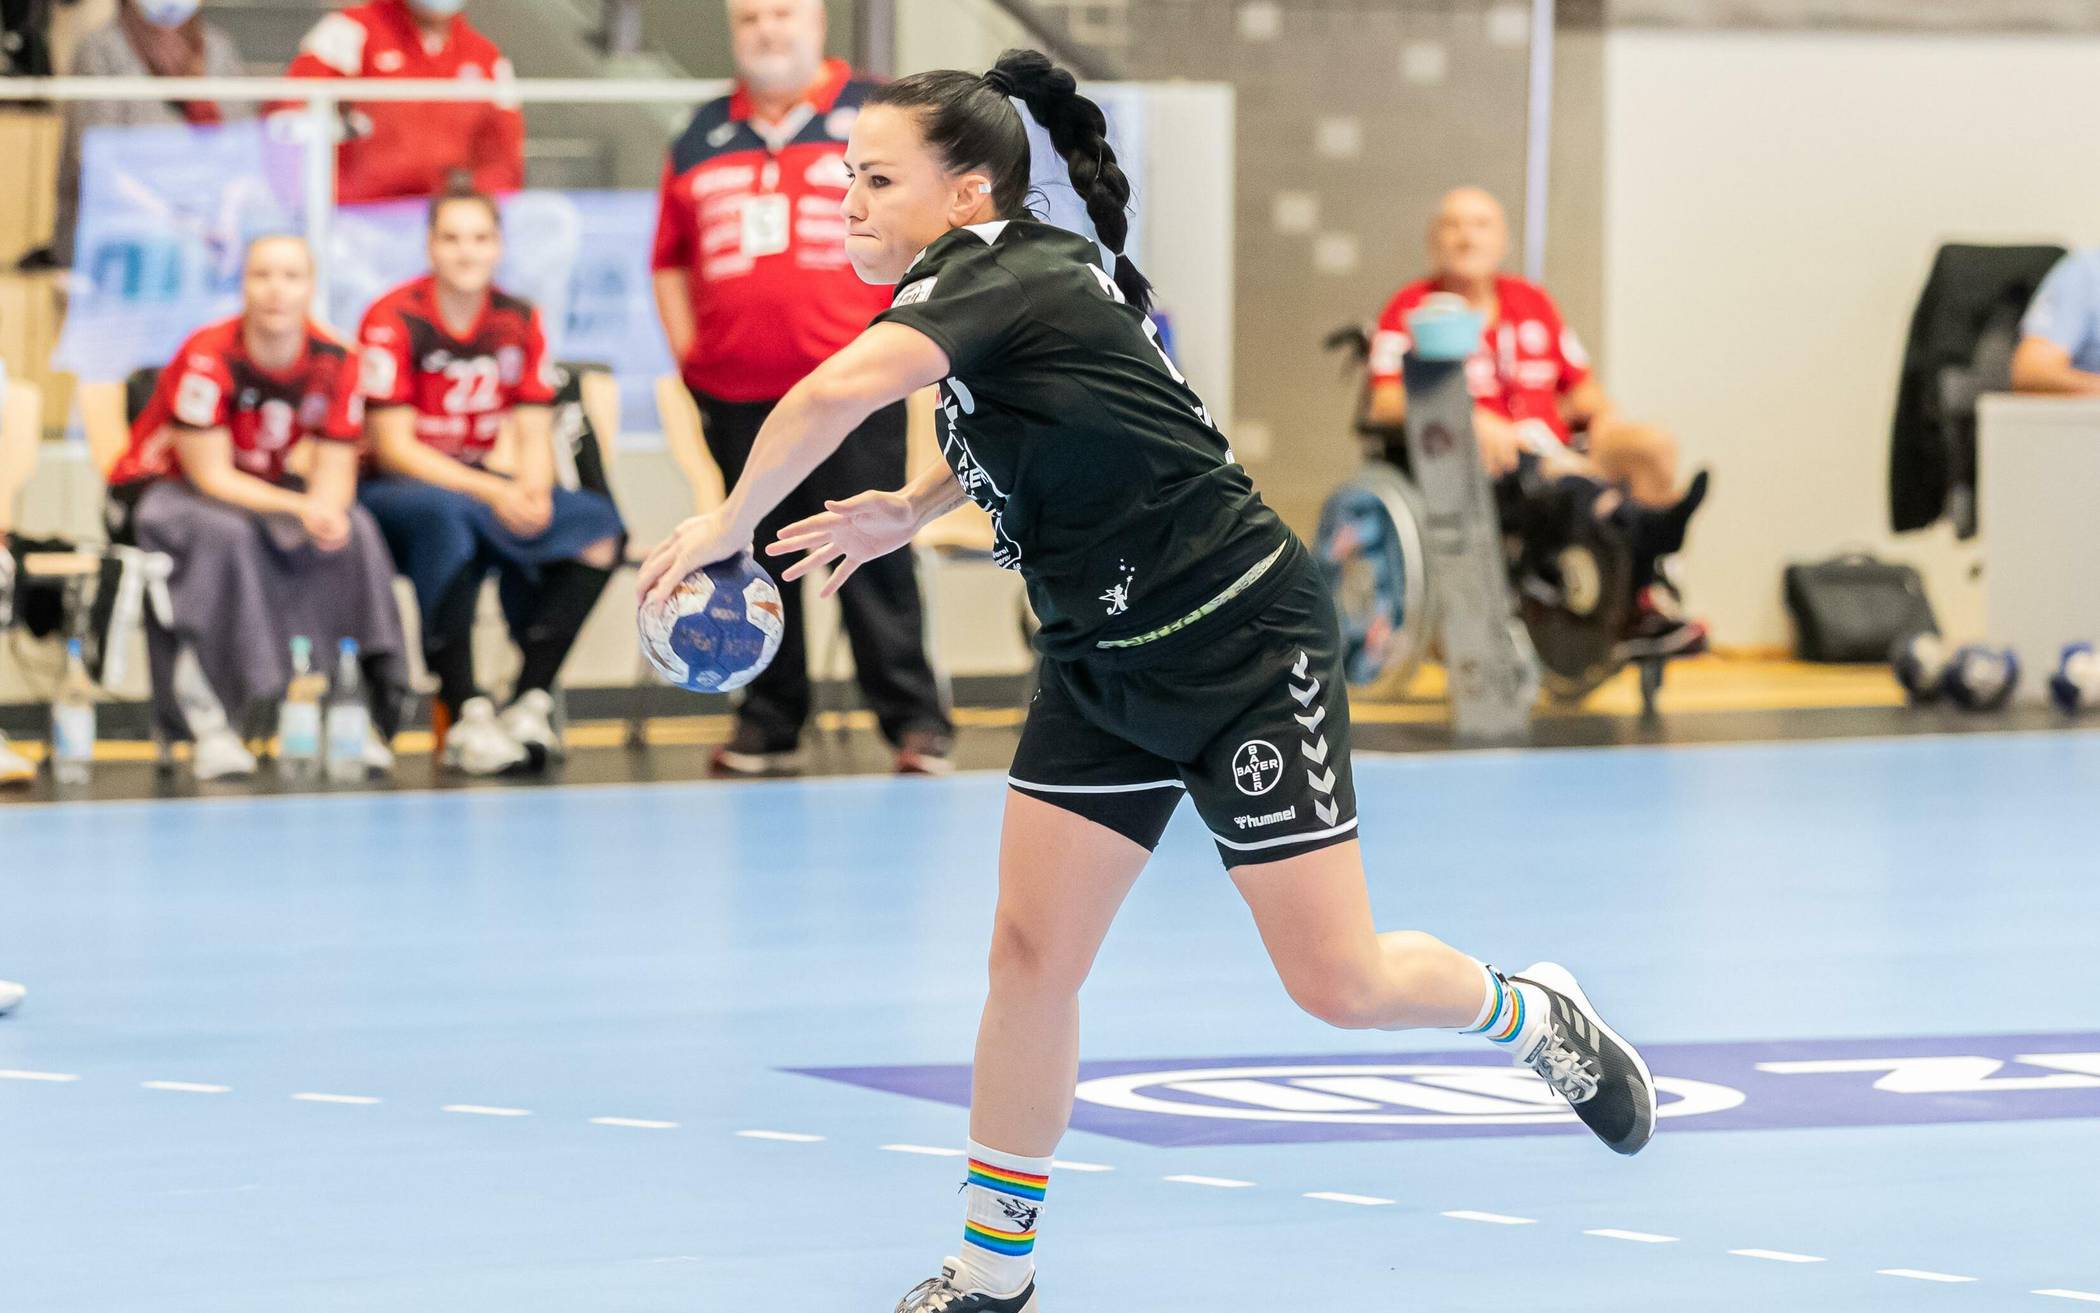  Vereine etwa mit einem Handball-Angebot für Mädchen sind förderungswürdig.  